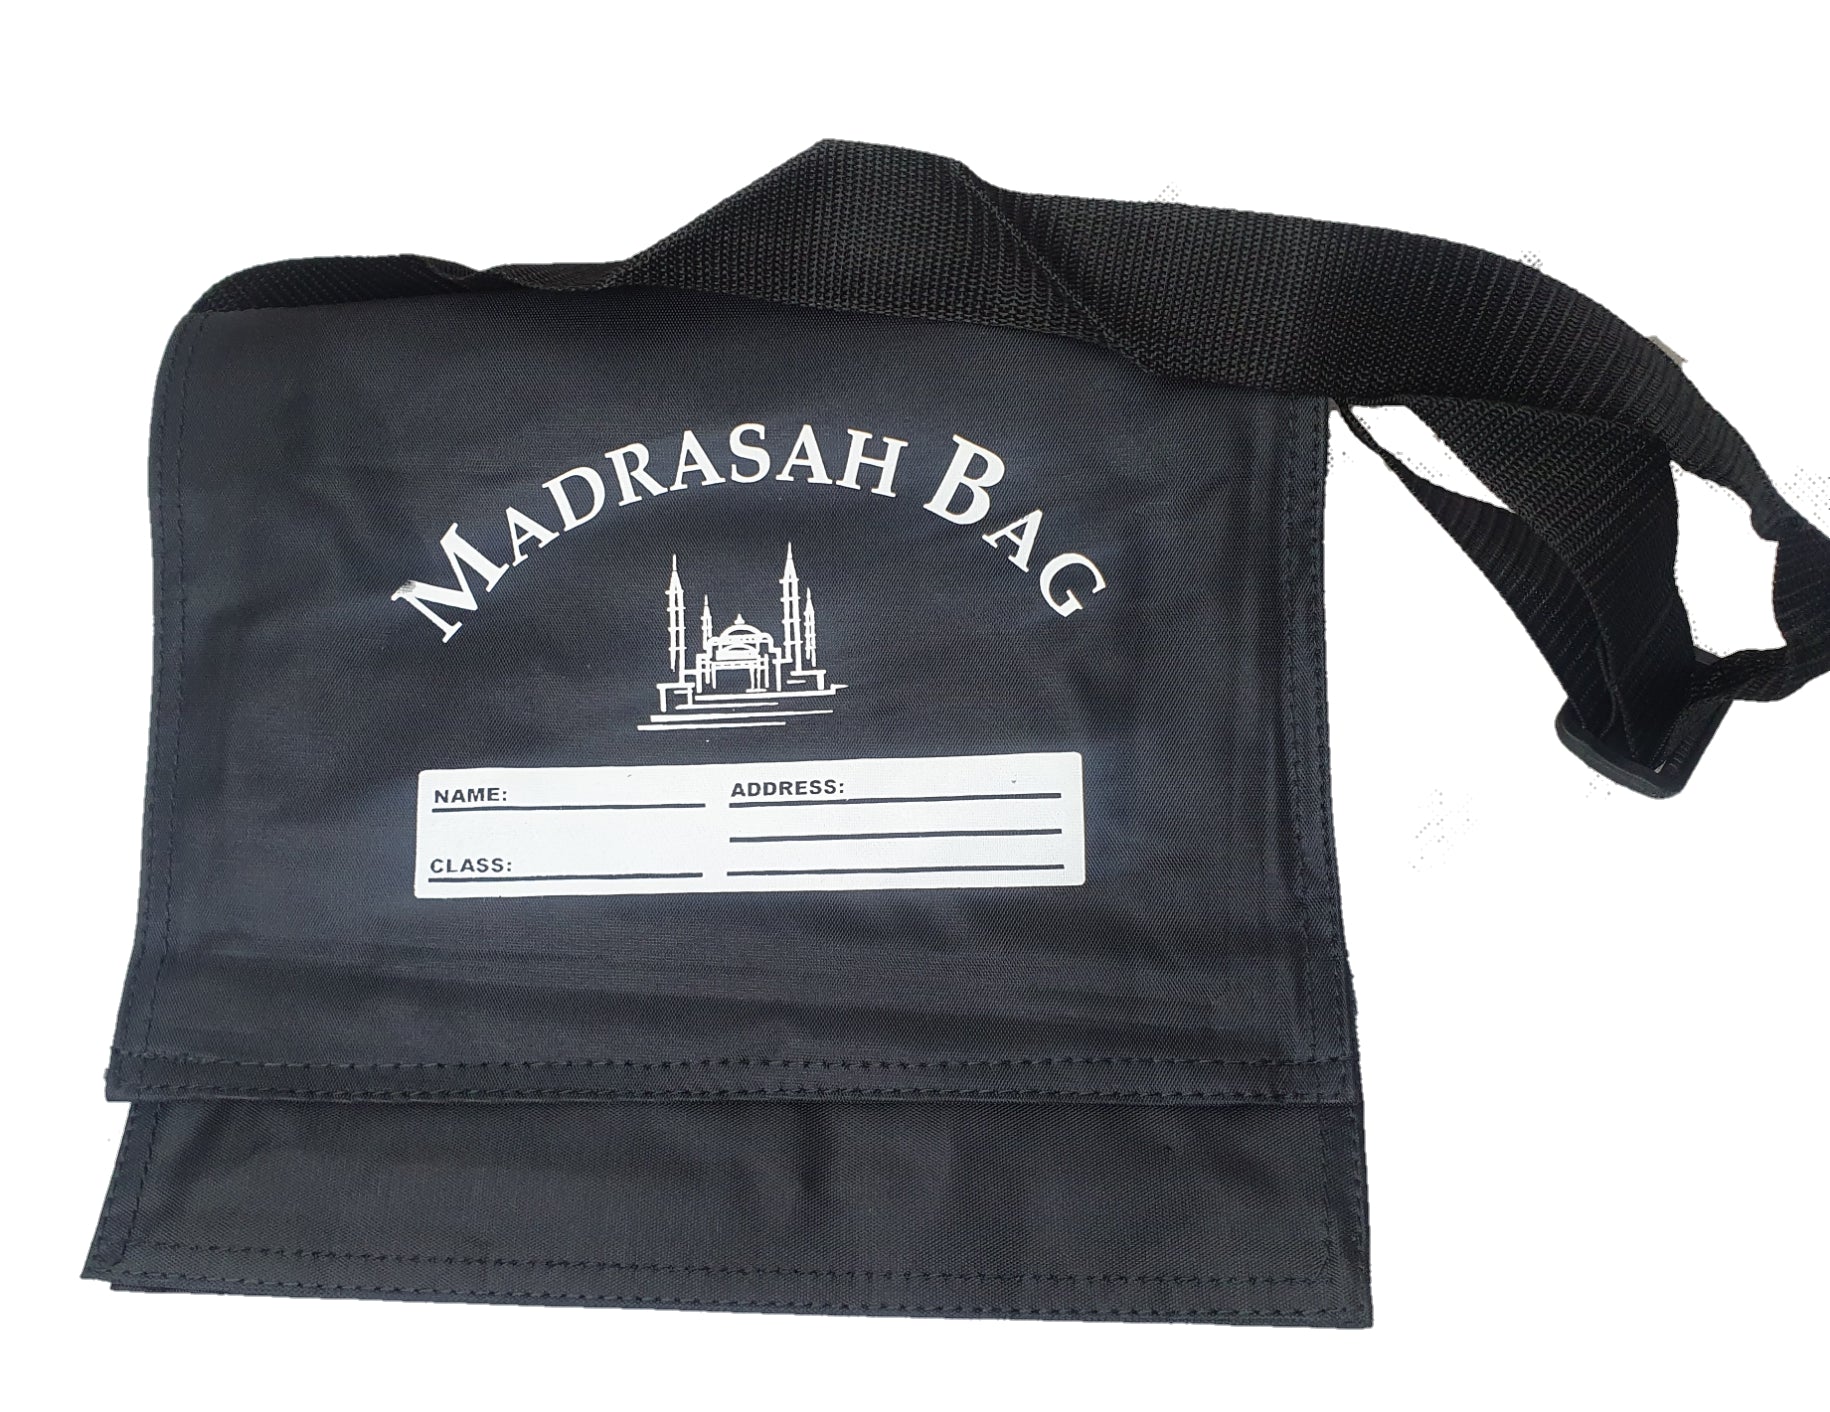 Madrasha Bag